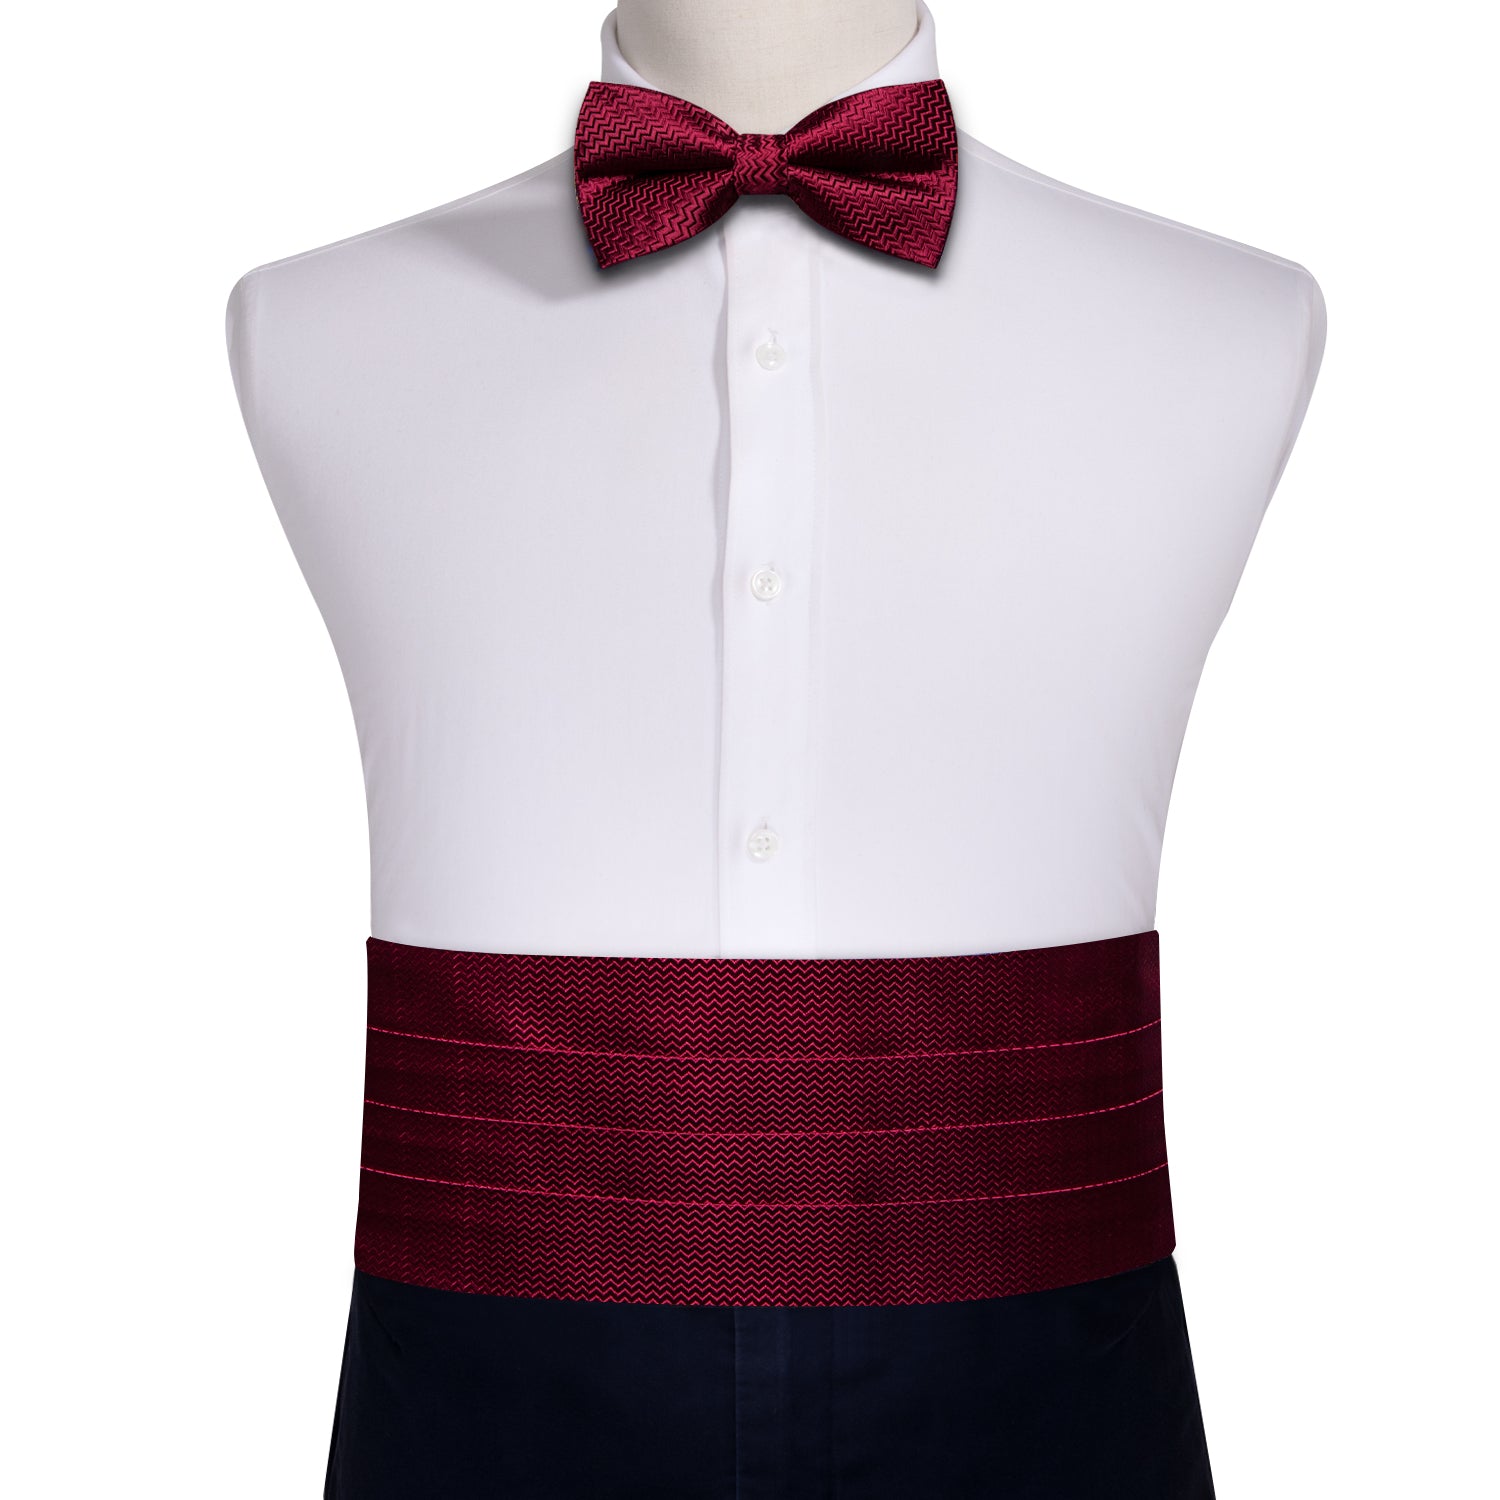 Burgundy Red Solid Cummerbund Bow tie Handkerchief Cufflinks Set